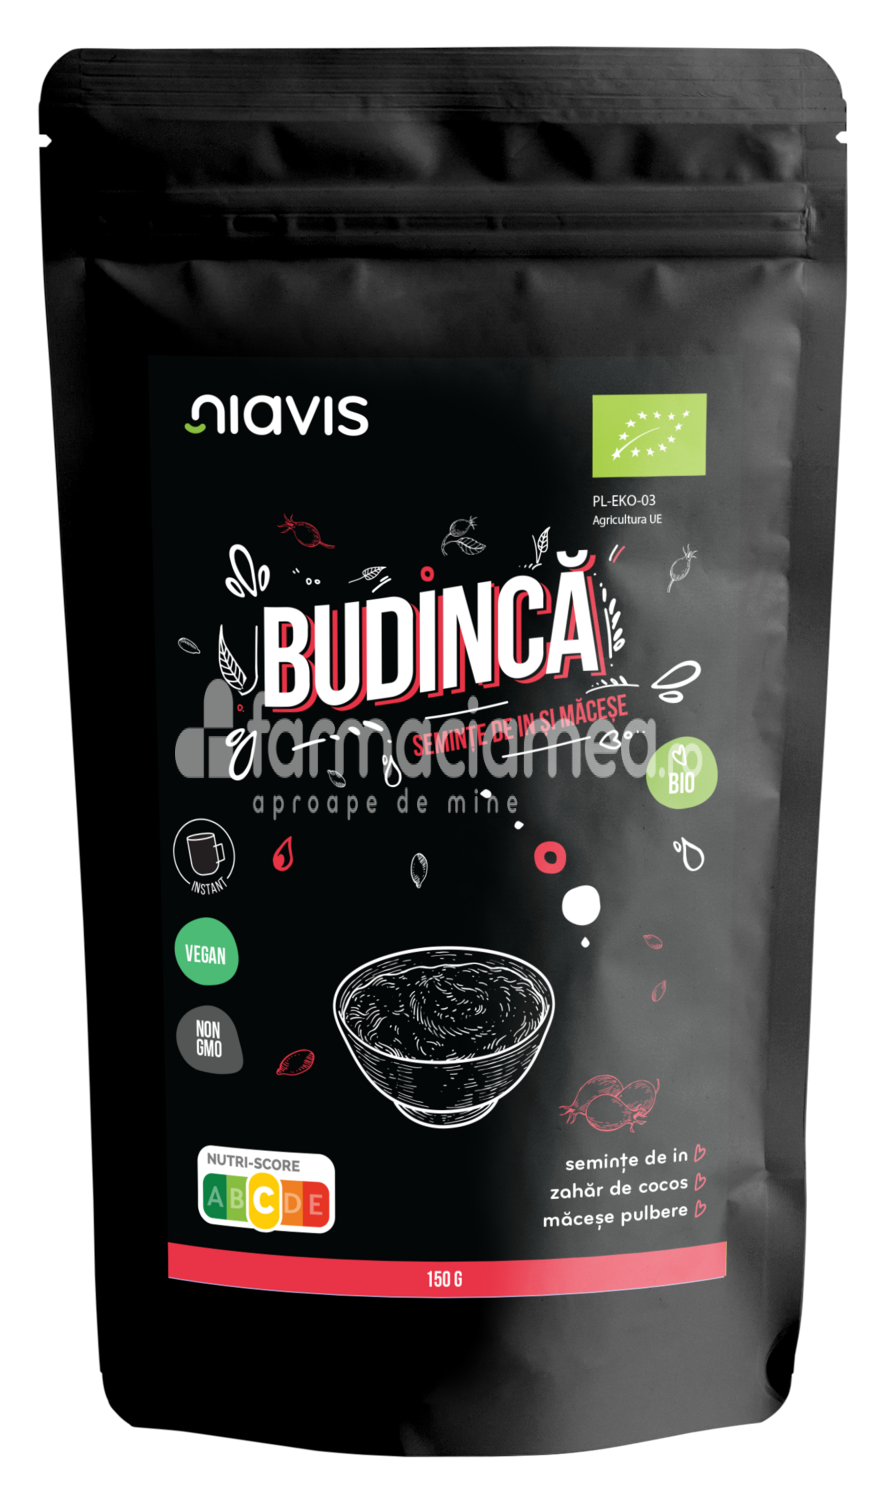 Alimente și băuturi - Niavis Budinca instant cu seminte de in si macese ecologica Bio, 150g, farmaciamea.ro